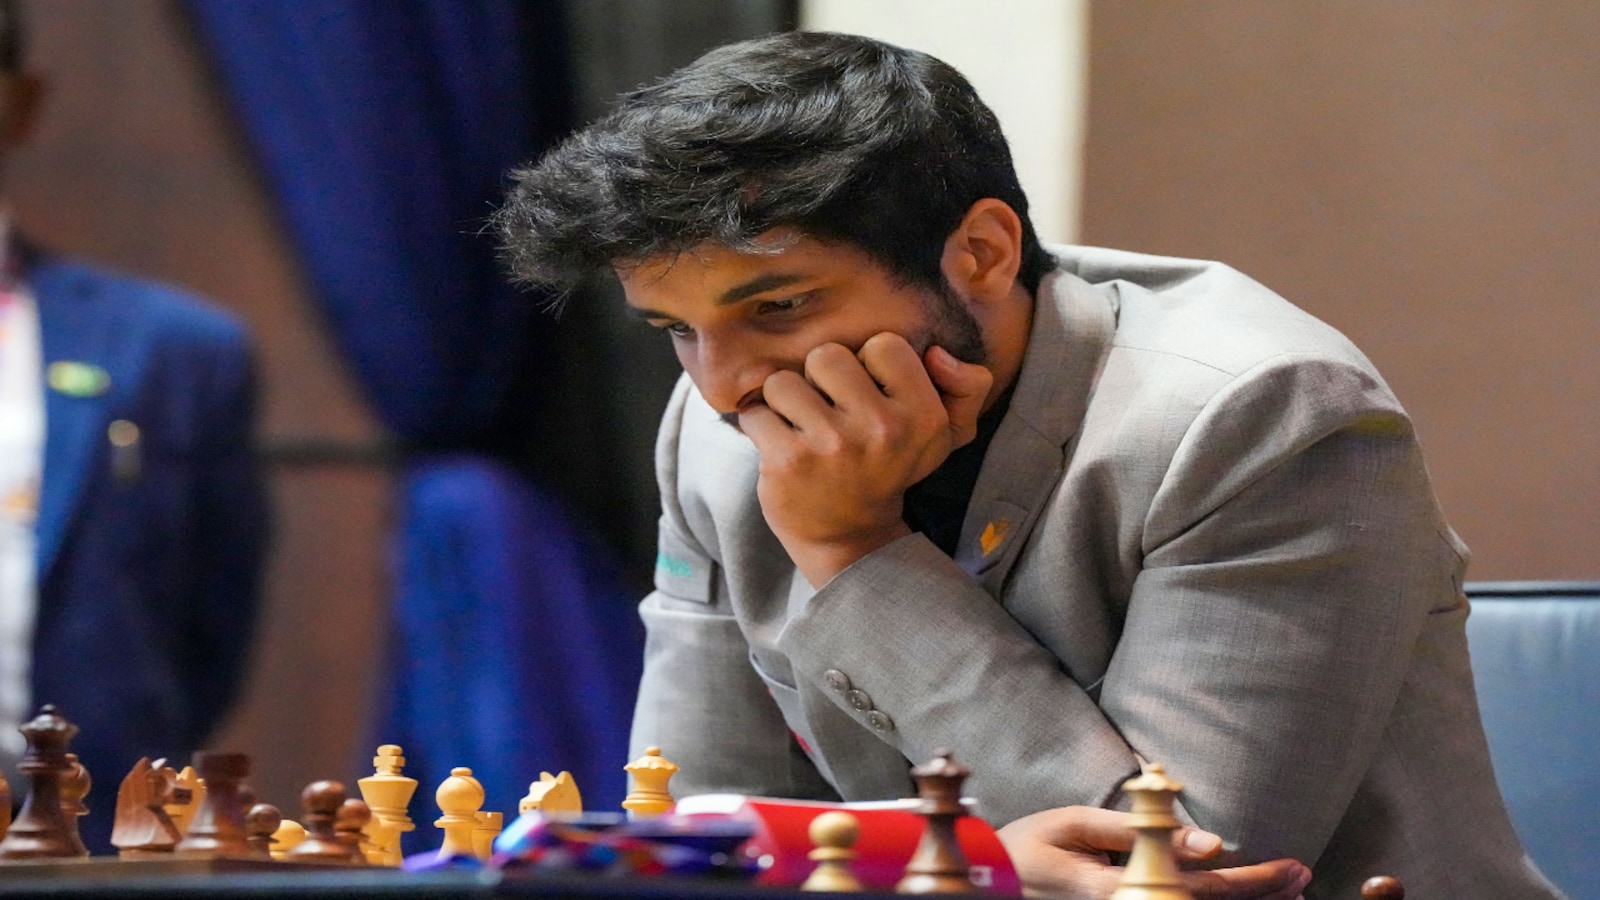 Tata Steel Chess India 2023: Gukesh slips to third, Praggnanandhaa